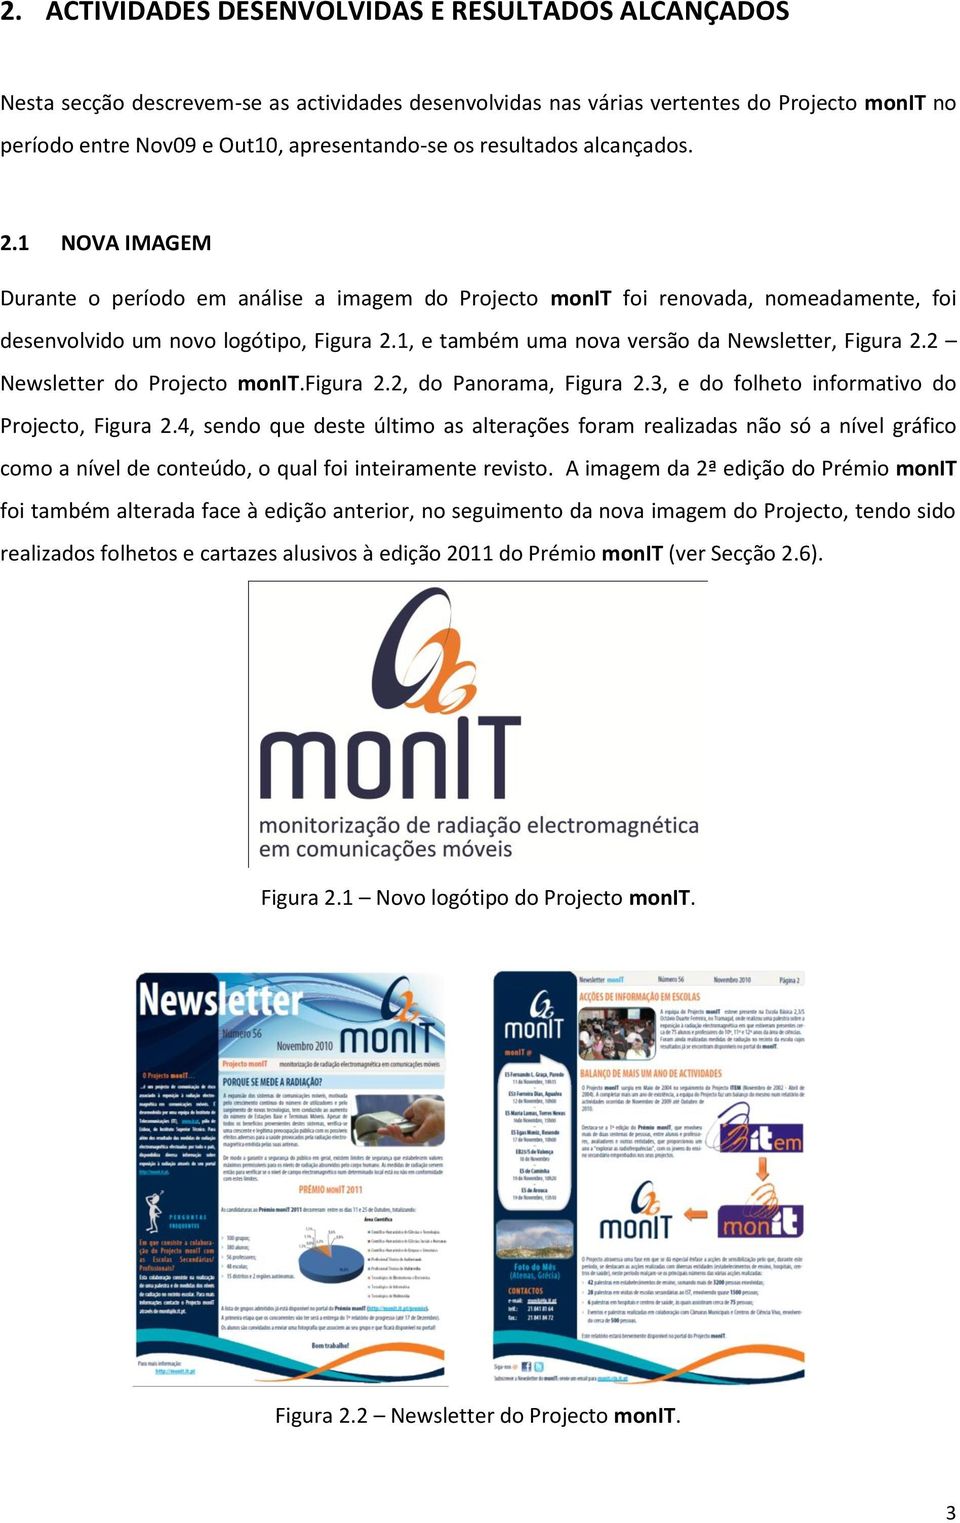 1, e também uma nova versão da Newsletter, Figura 2.2 Newsletter do Projecto monit.figura 2.2, do Panorama, Figura 2.3, e do folheto informativo do Projecto, Figura 2.